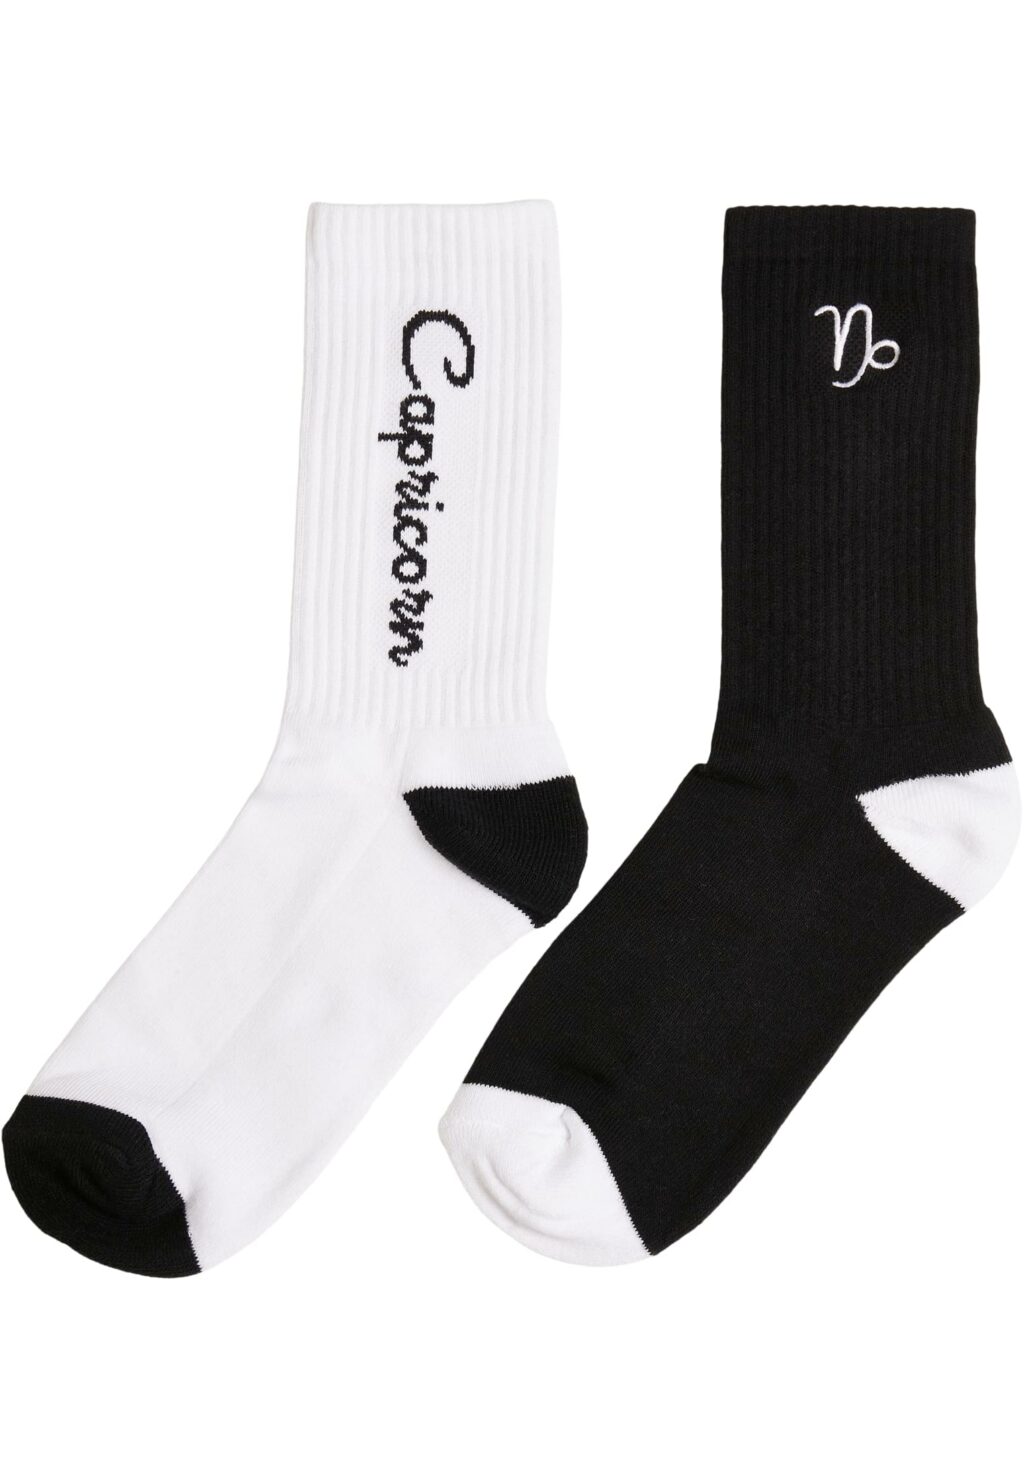 Zodiac Socks 2-Pack black/white capricorn MT2235